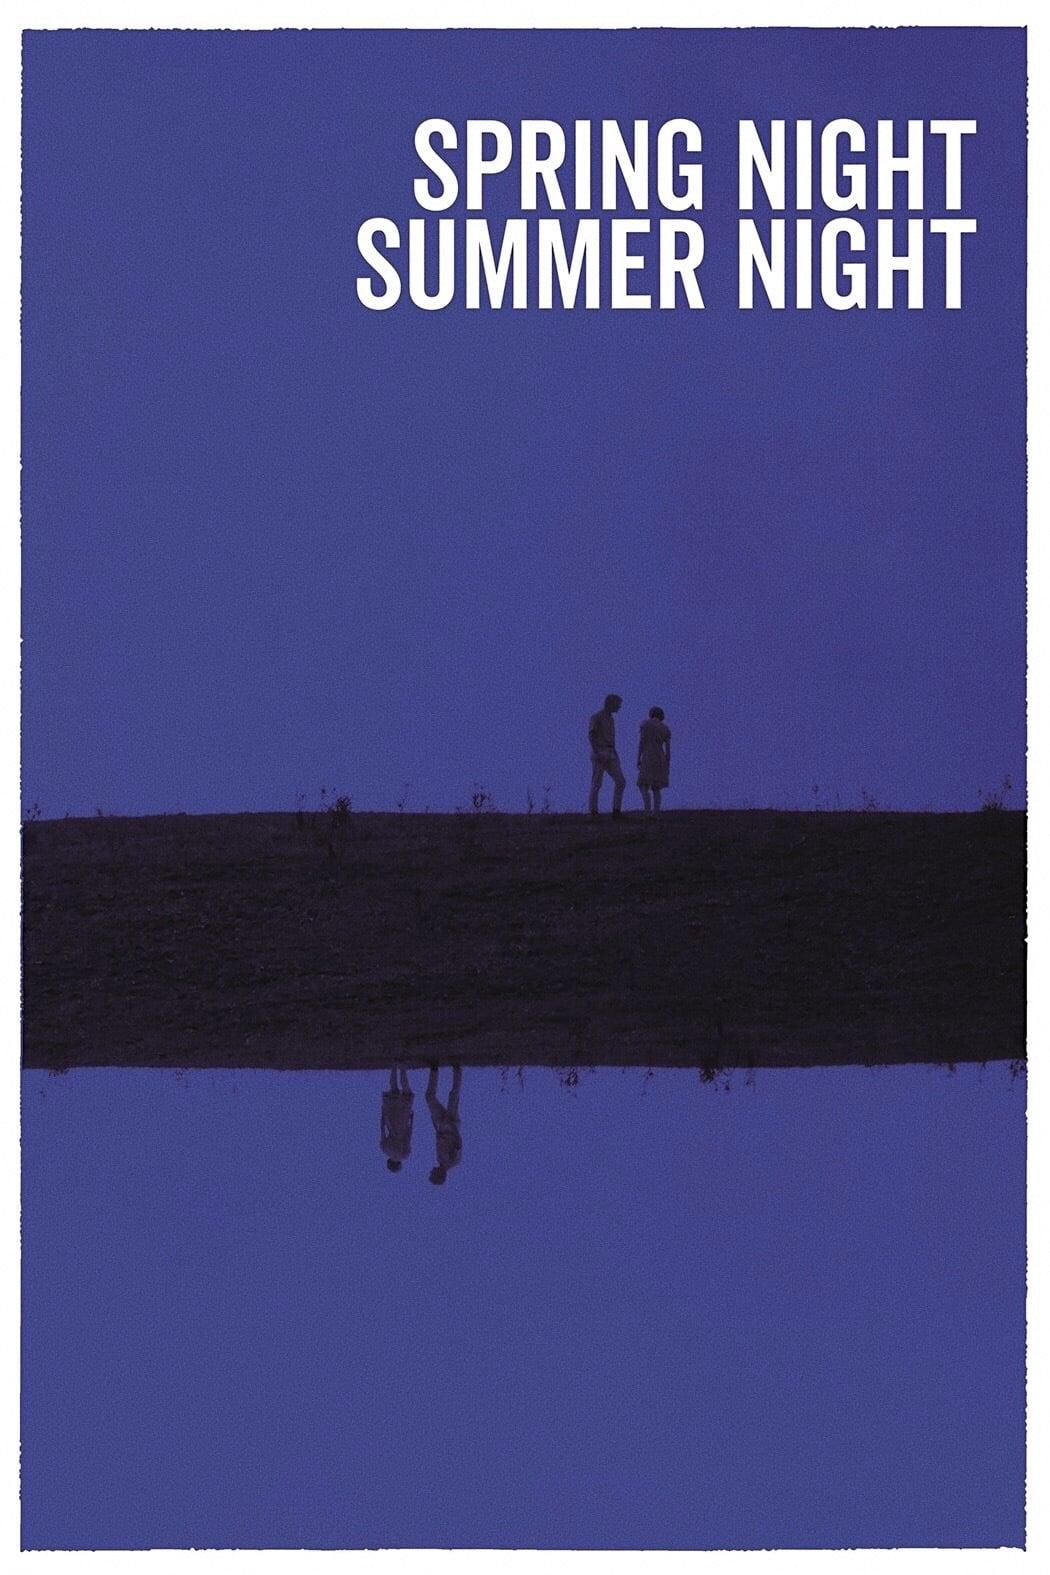 Spring Night, Summer Night poster